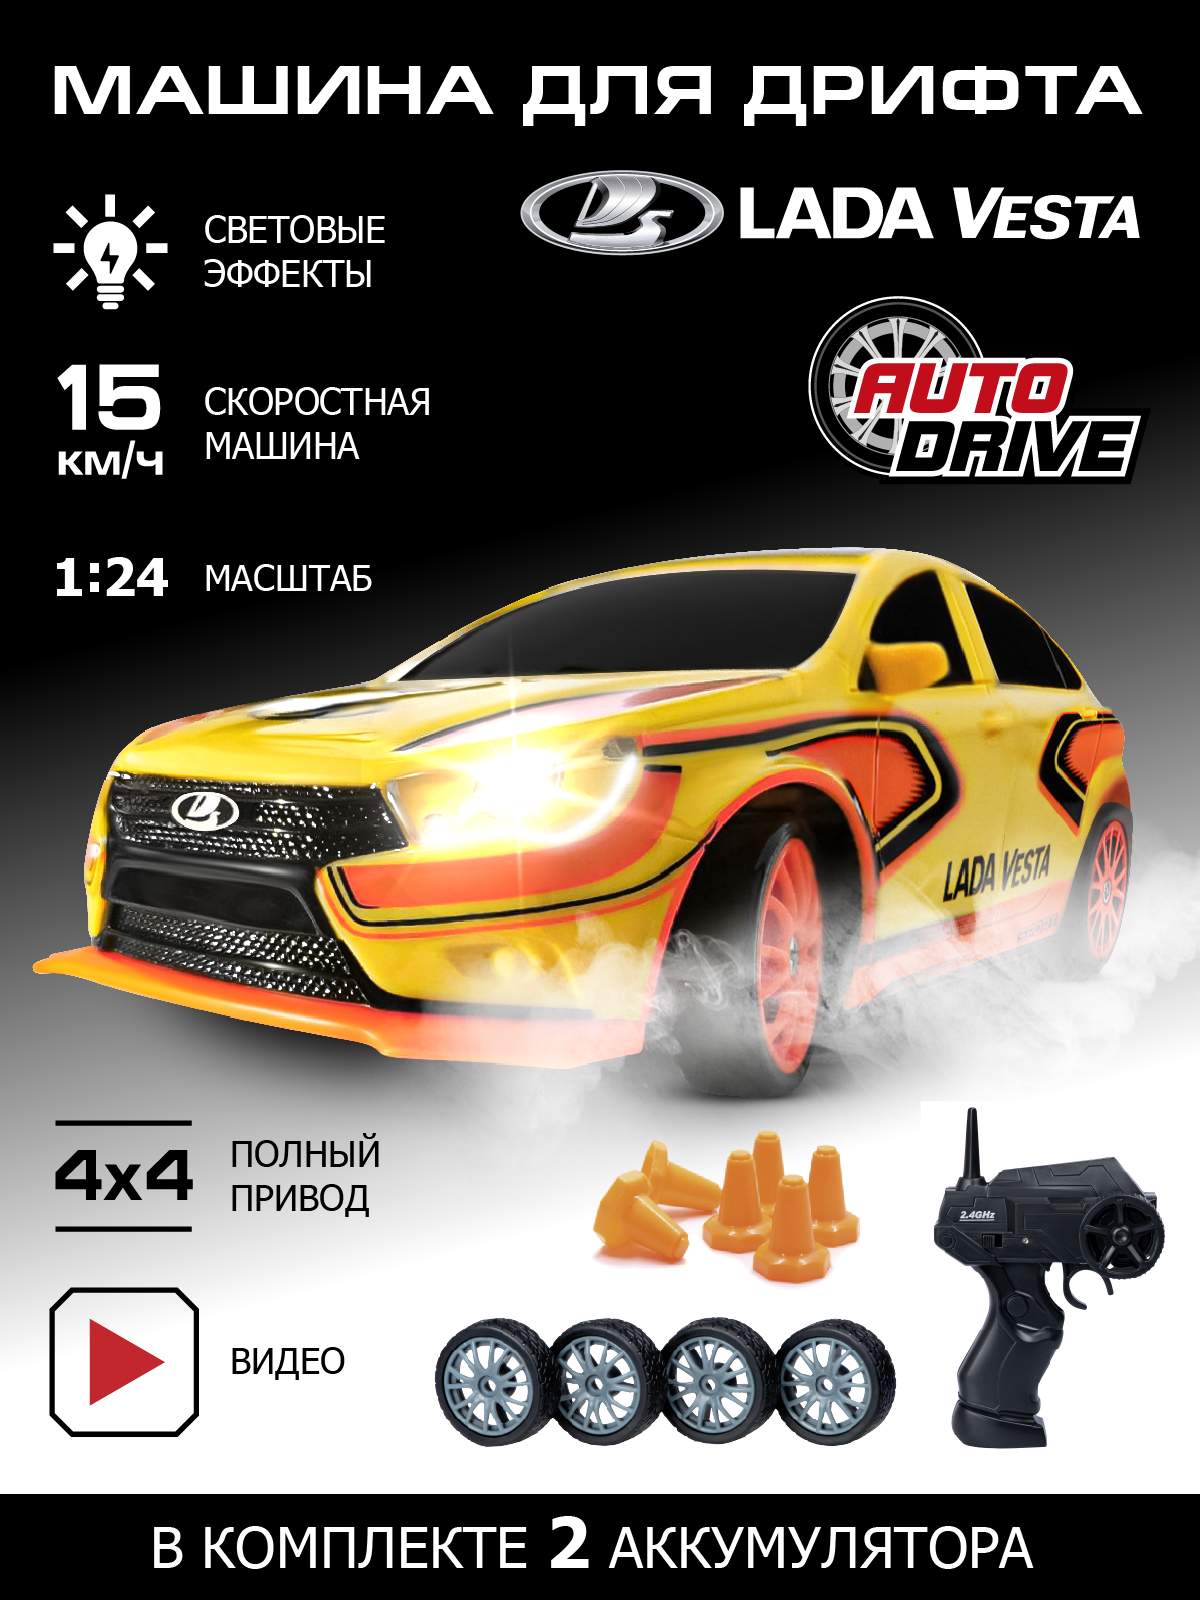 Машина AUTO DRIVE для дрифта Lada Vesta,М1:24,2 4GHz,4WD JB0404802